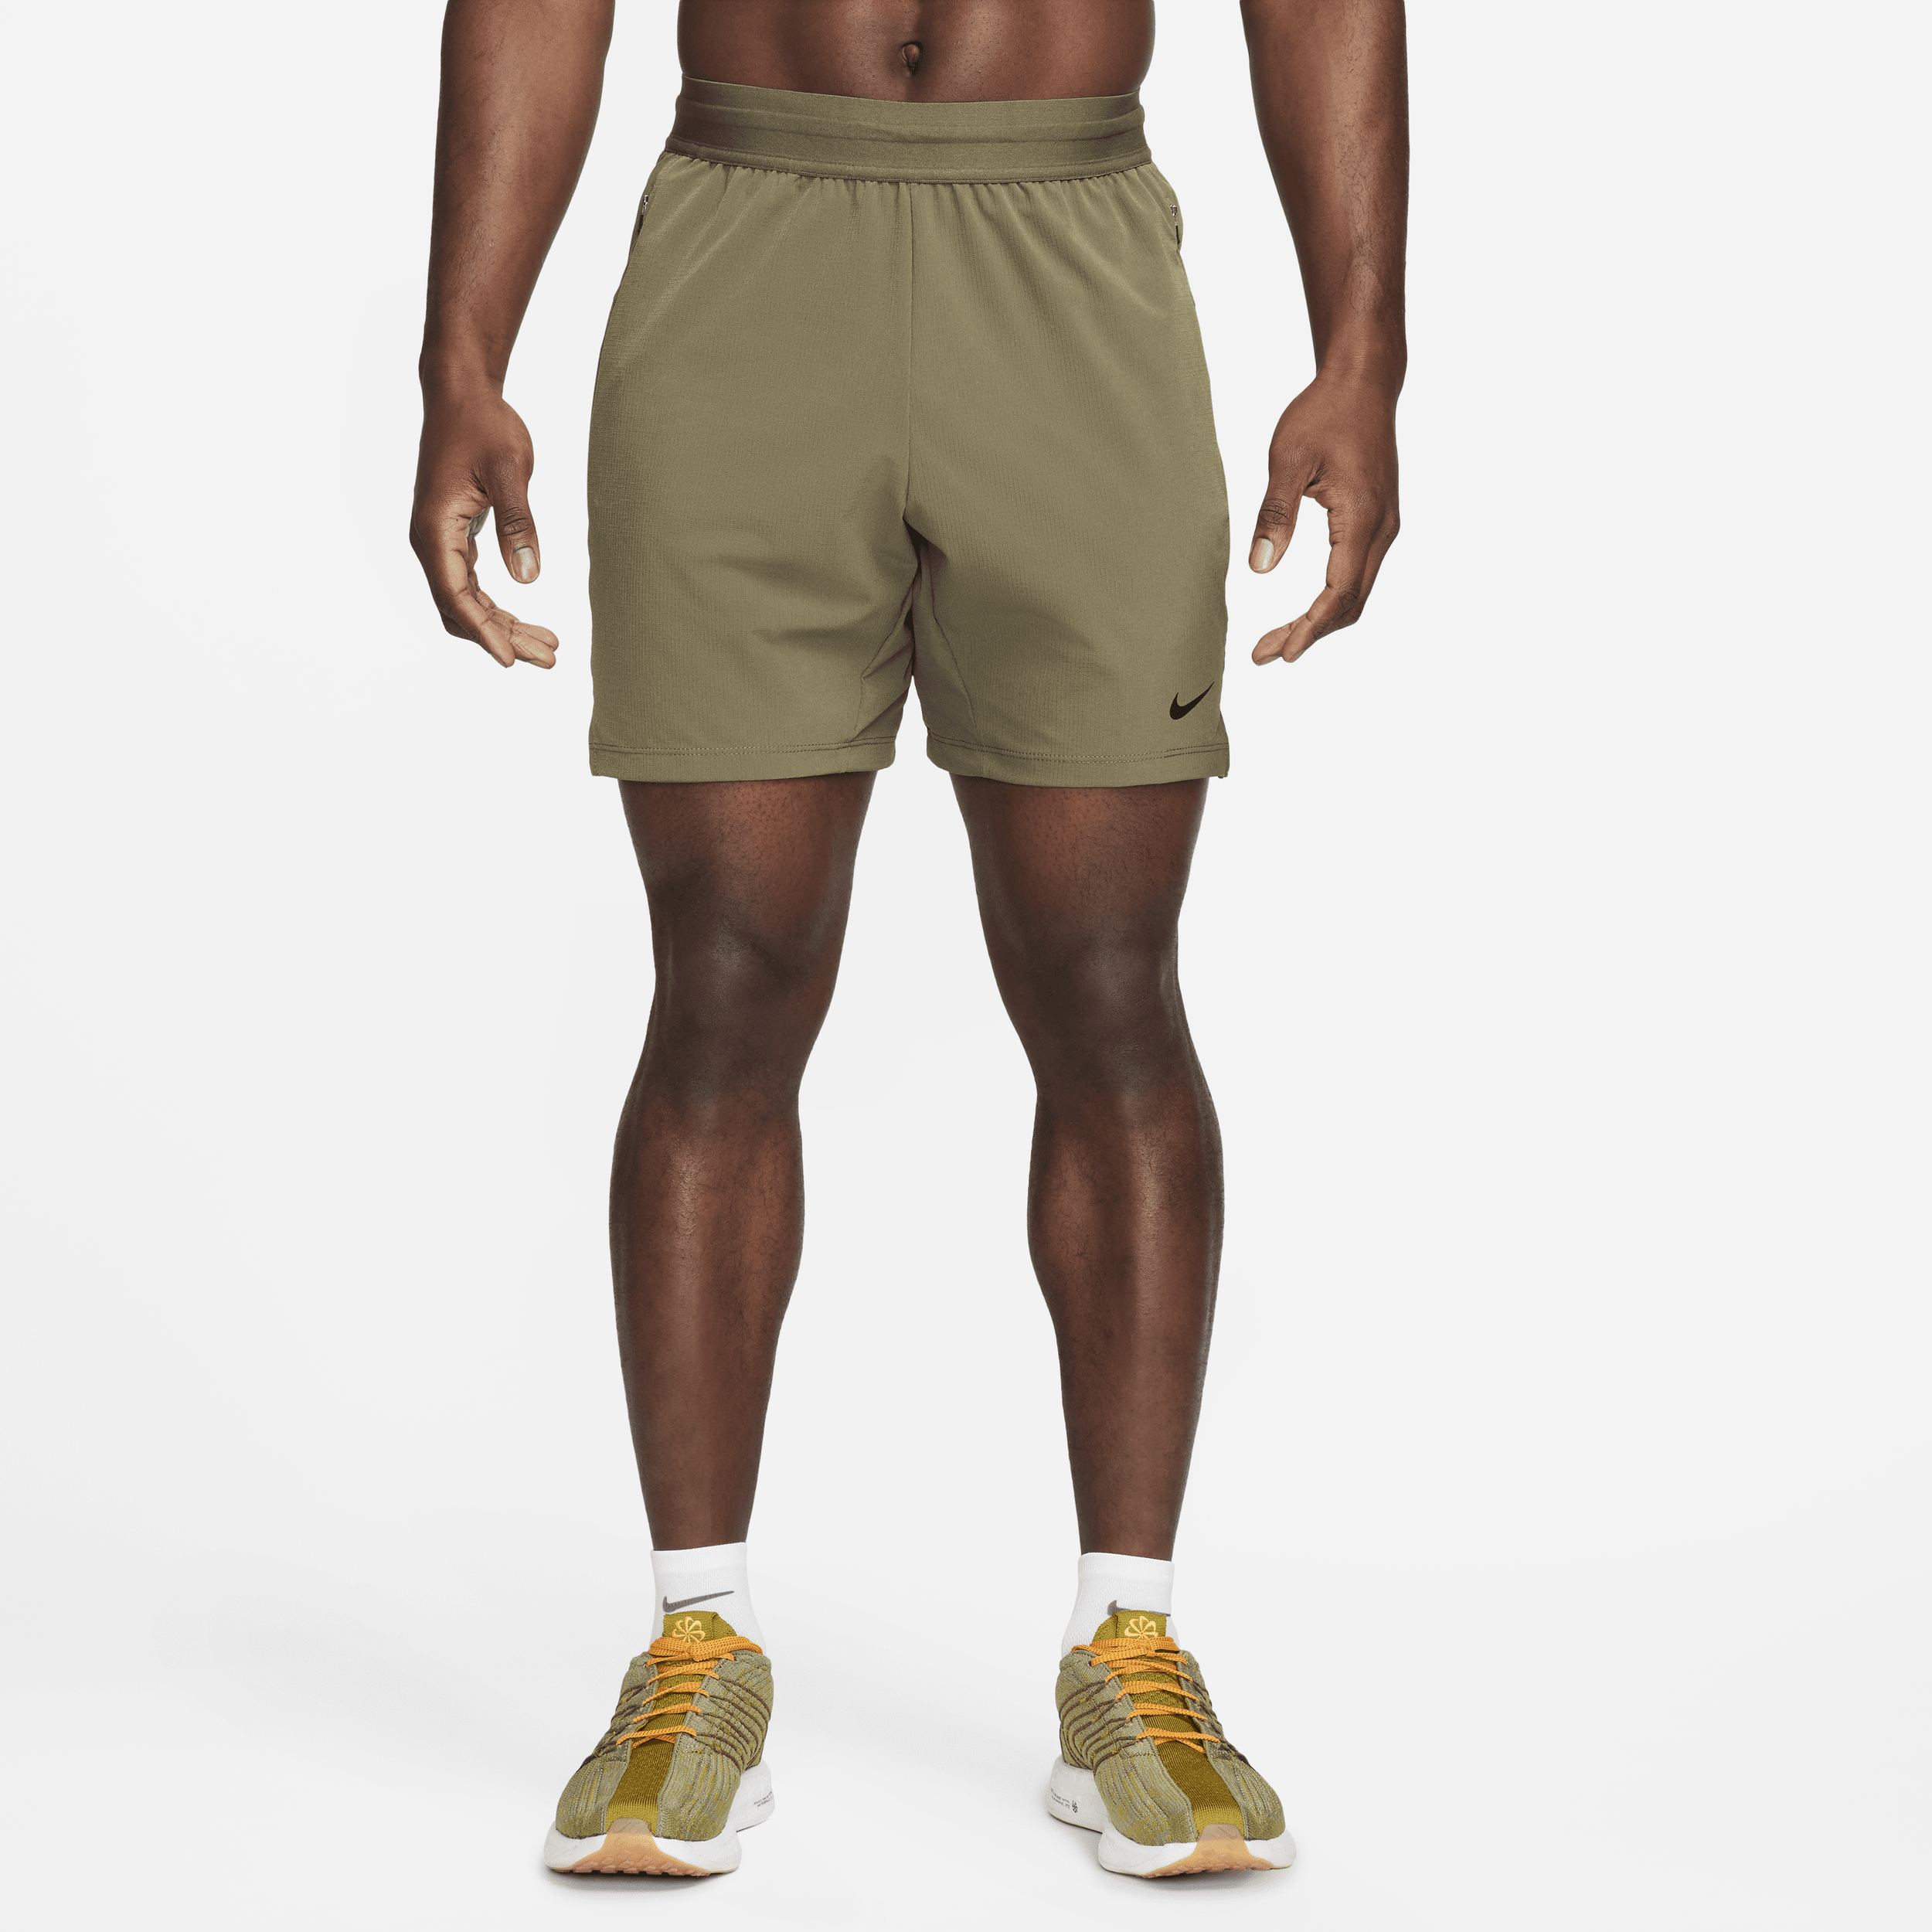 Nike Flex Rep 4.0 Dri-FIT-fitnessshorts uden for (17 cm) til mænd - grøn